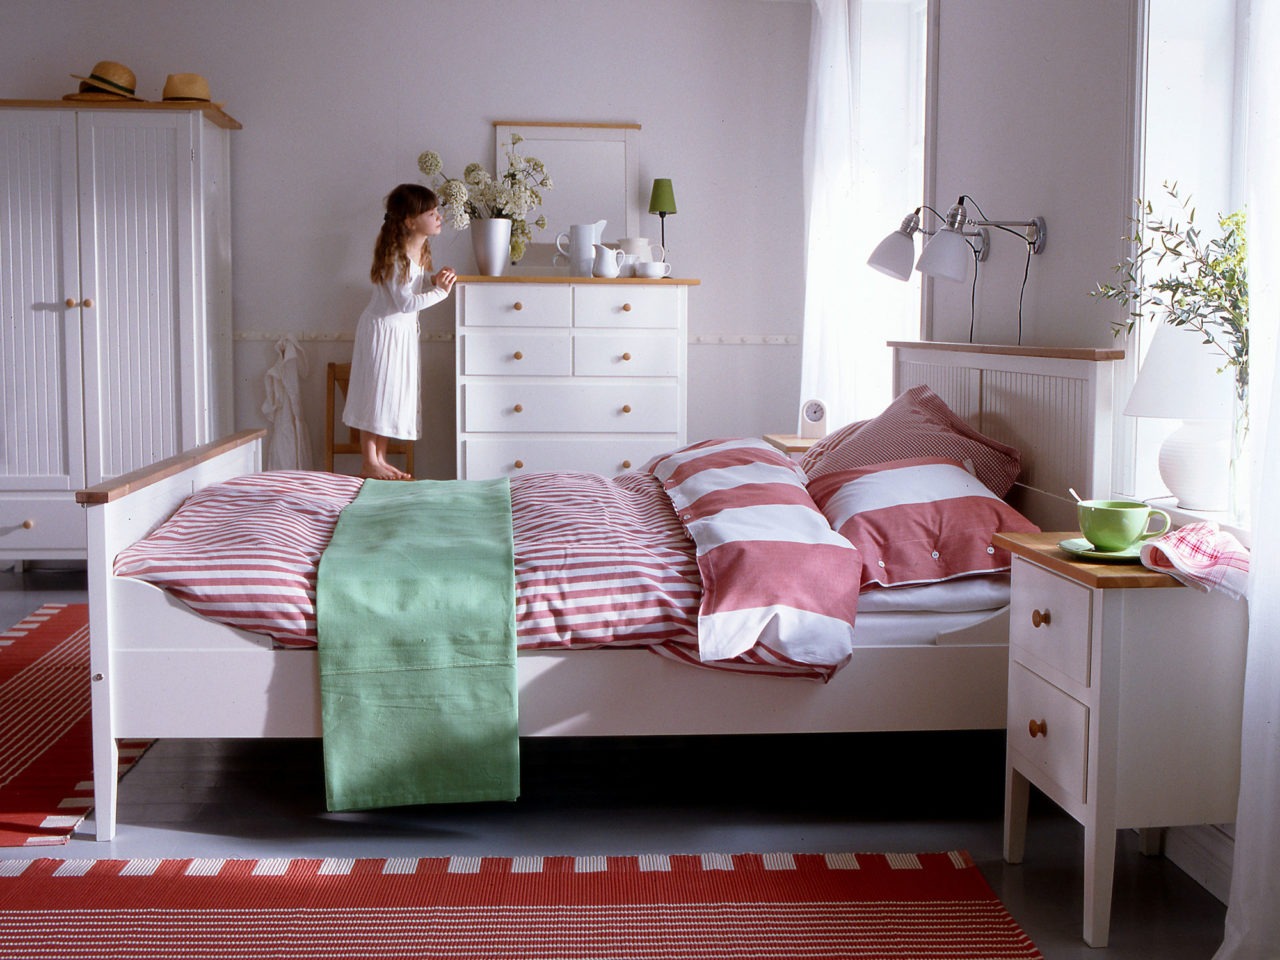 Mädchen steht auf einem Stuhl und schaut aus einem Schlafzimmer mit weißen Möbeln, Modell VISDALEN, im modernen Landhausstil.